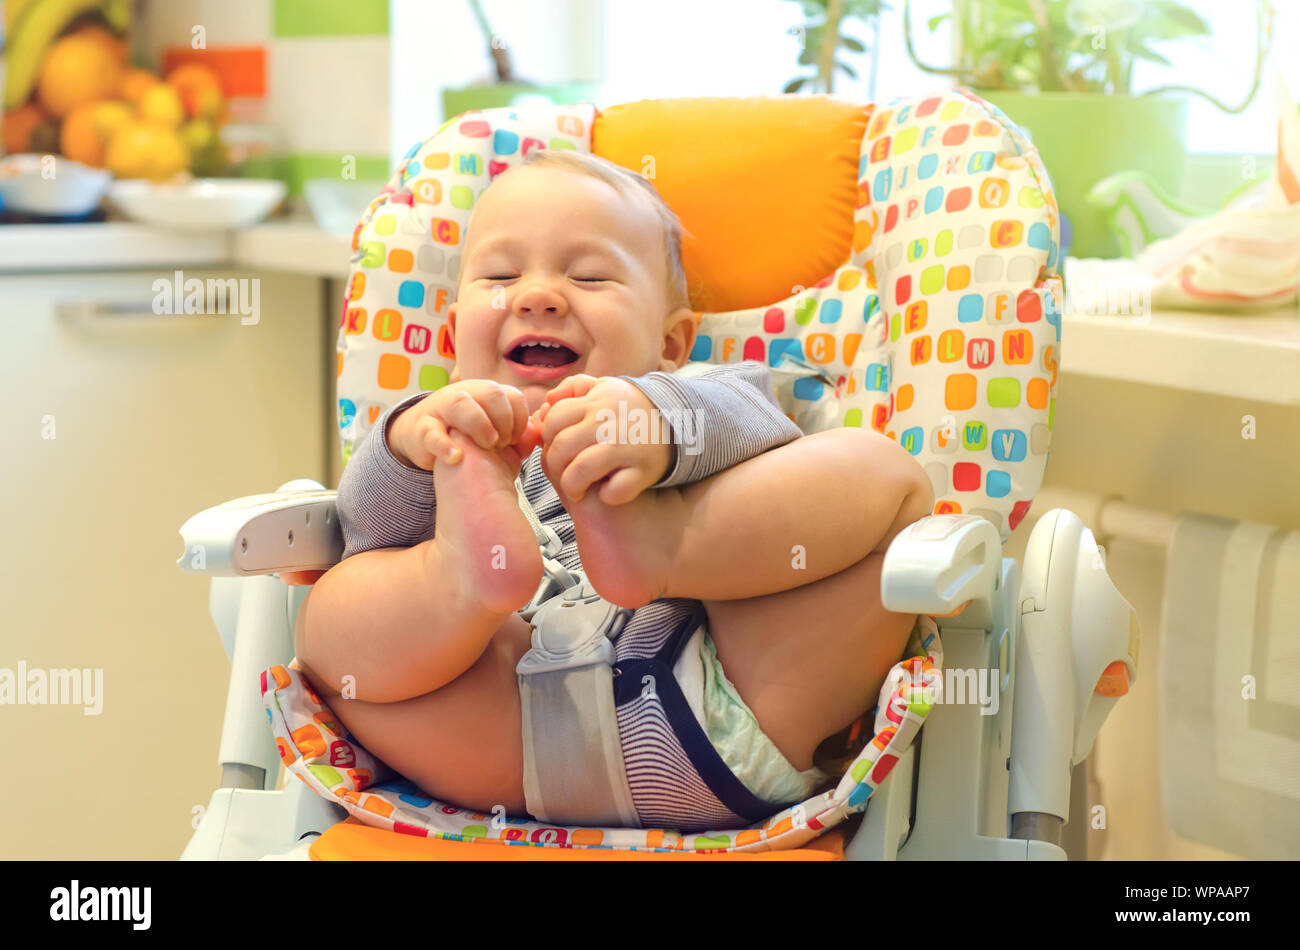 Smiling baby garçon assis dans la chaise haute Photo Stock - Alamy